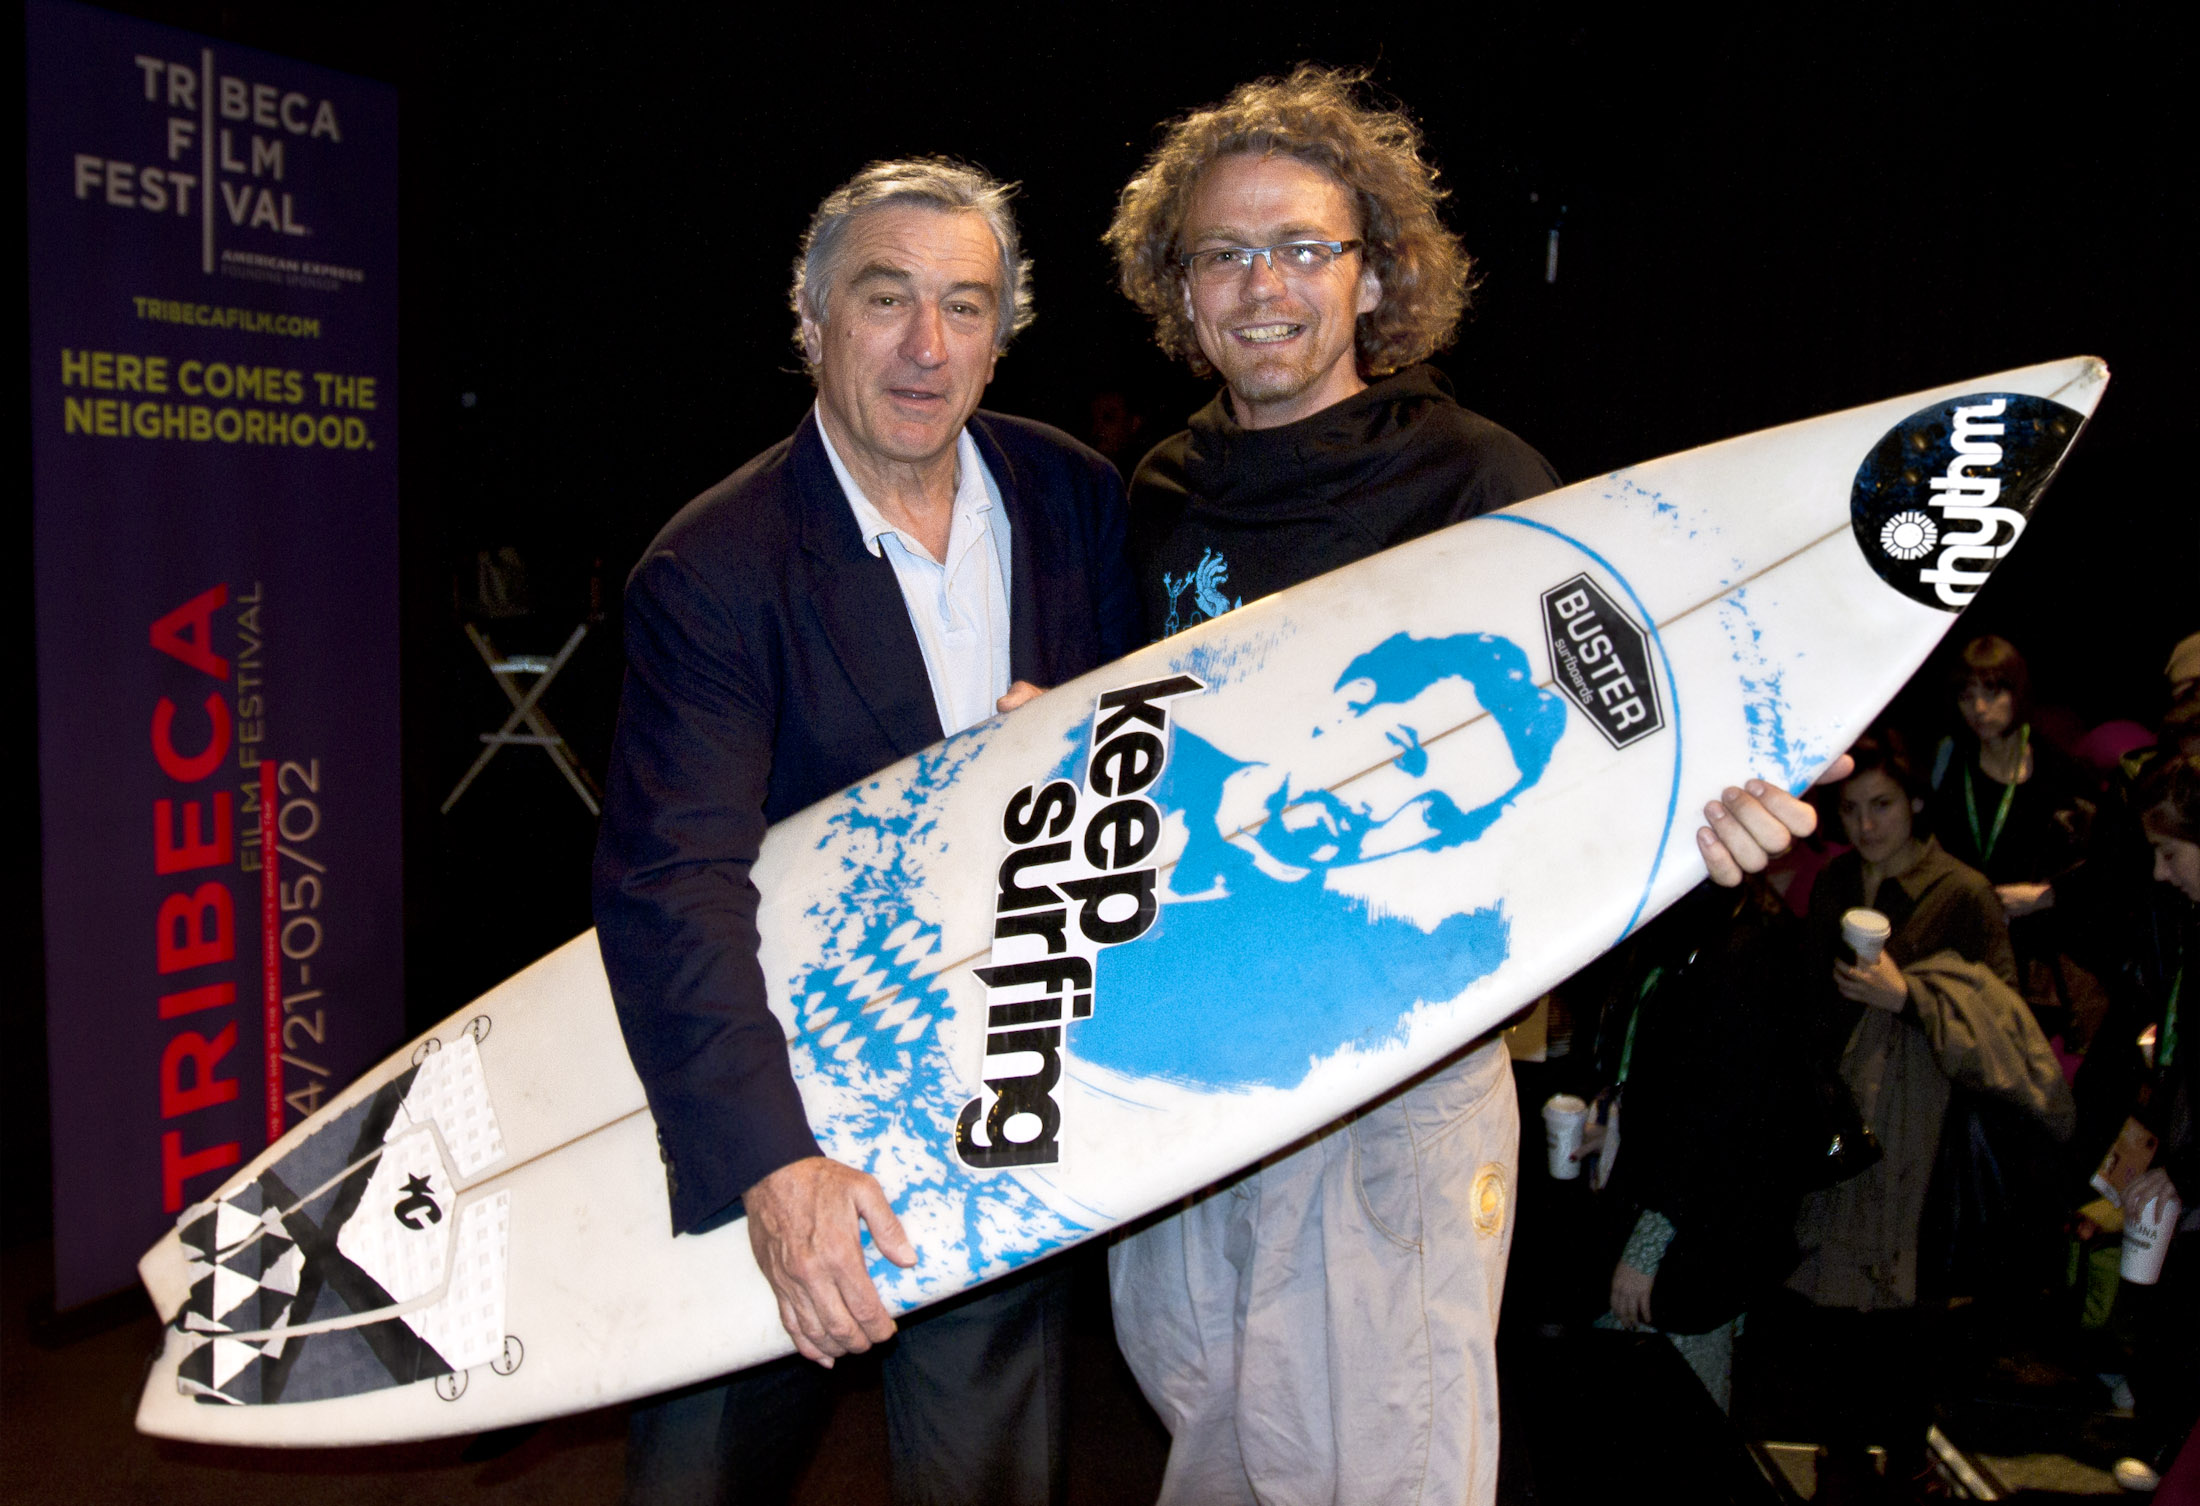 Robert de Niro und KEEP SURFING director Bjoern Richie Lob at the Tribeca Filmfestival in New York. Bob loves KEEP SURFING!